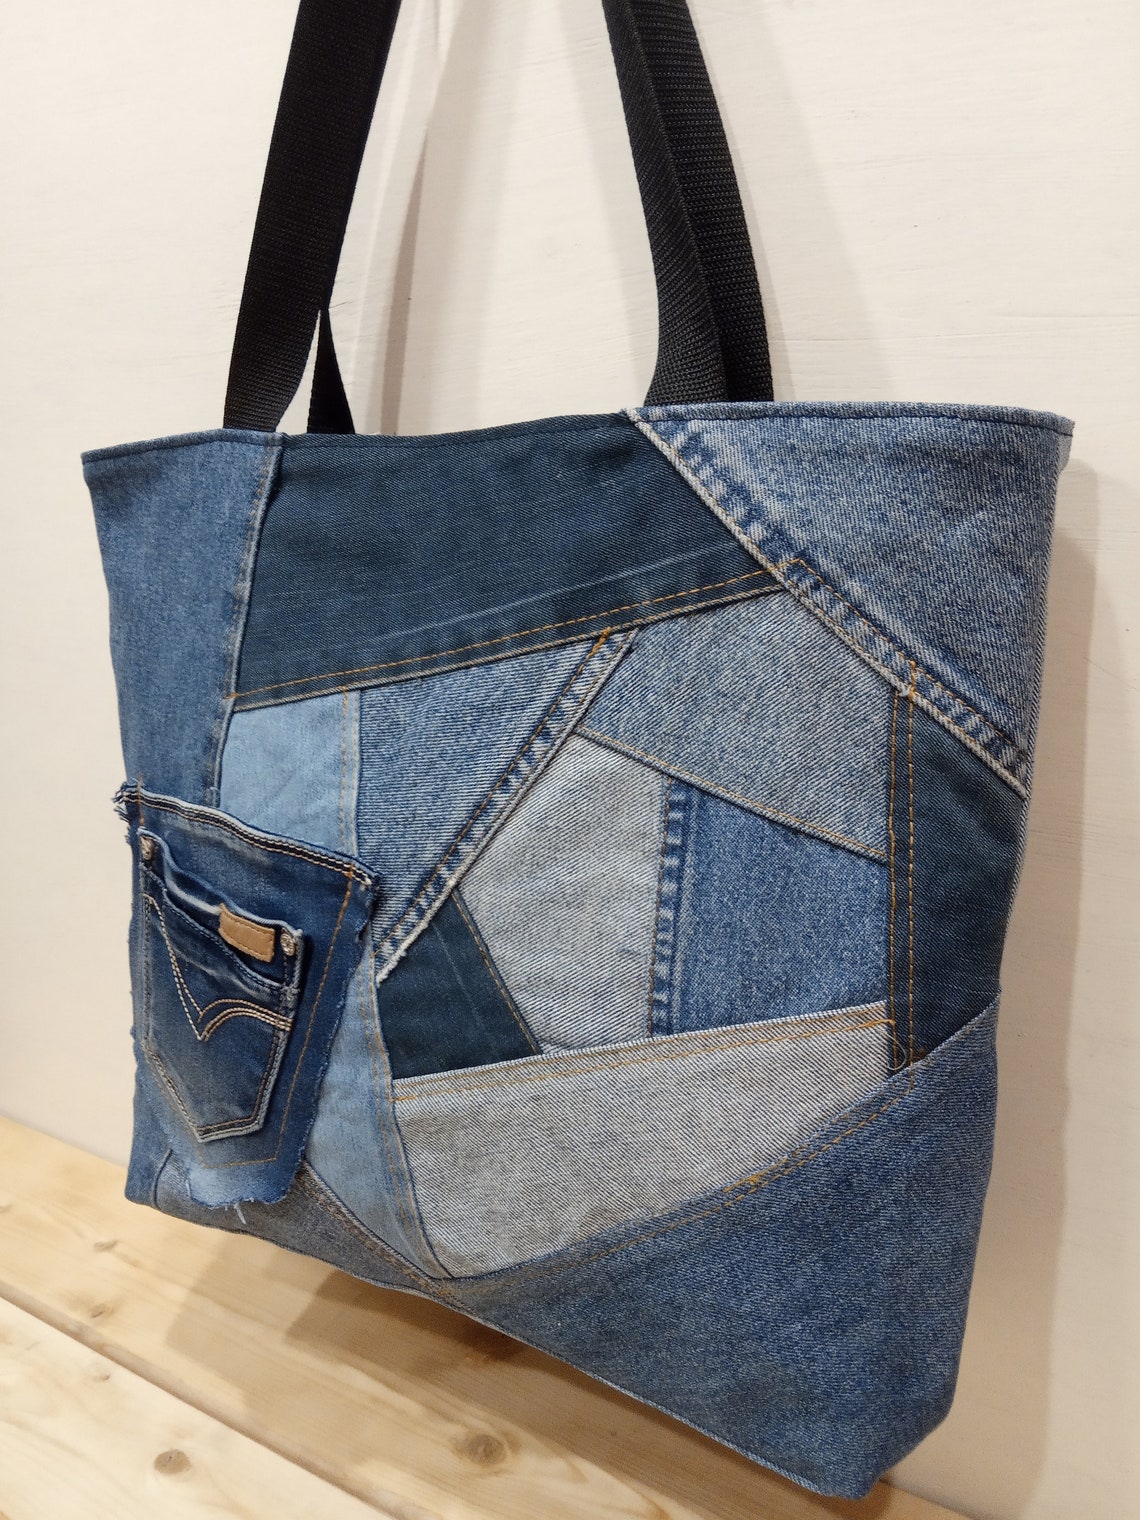 Denim shoulder bag jeans patchwork handbag recycled denim | Etsy